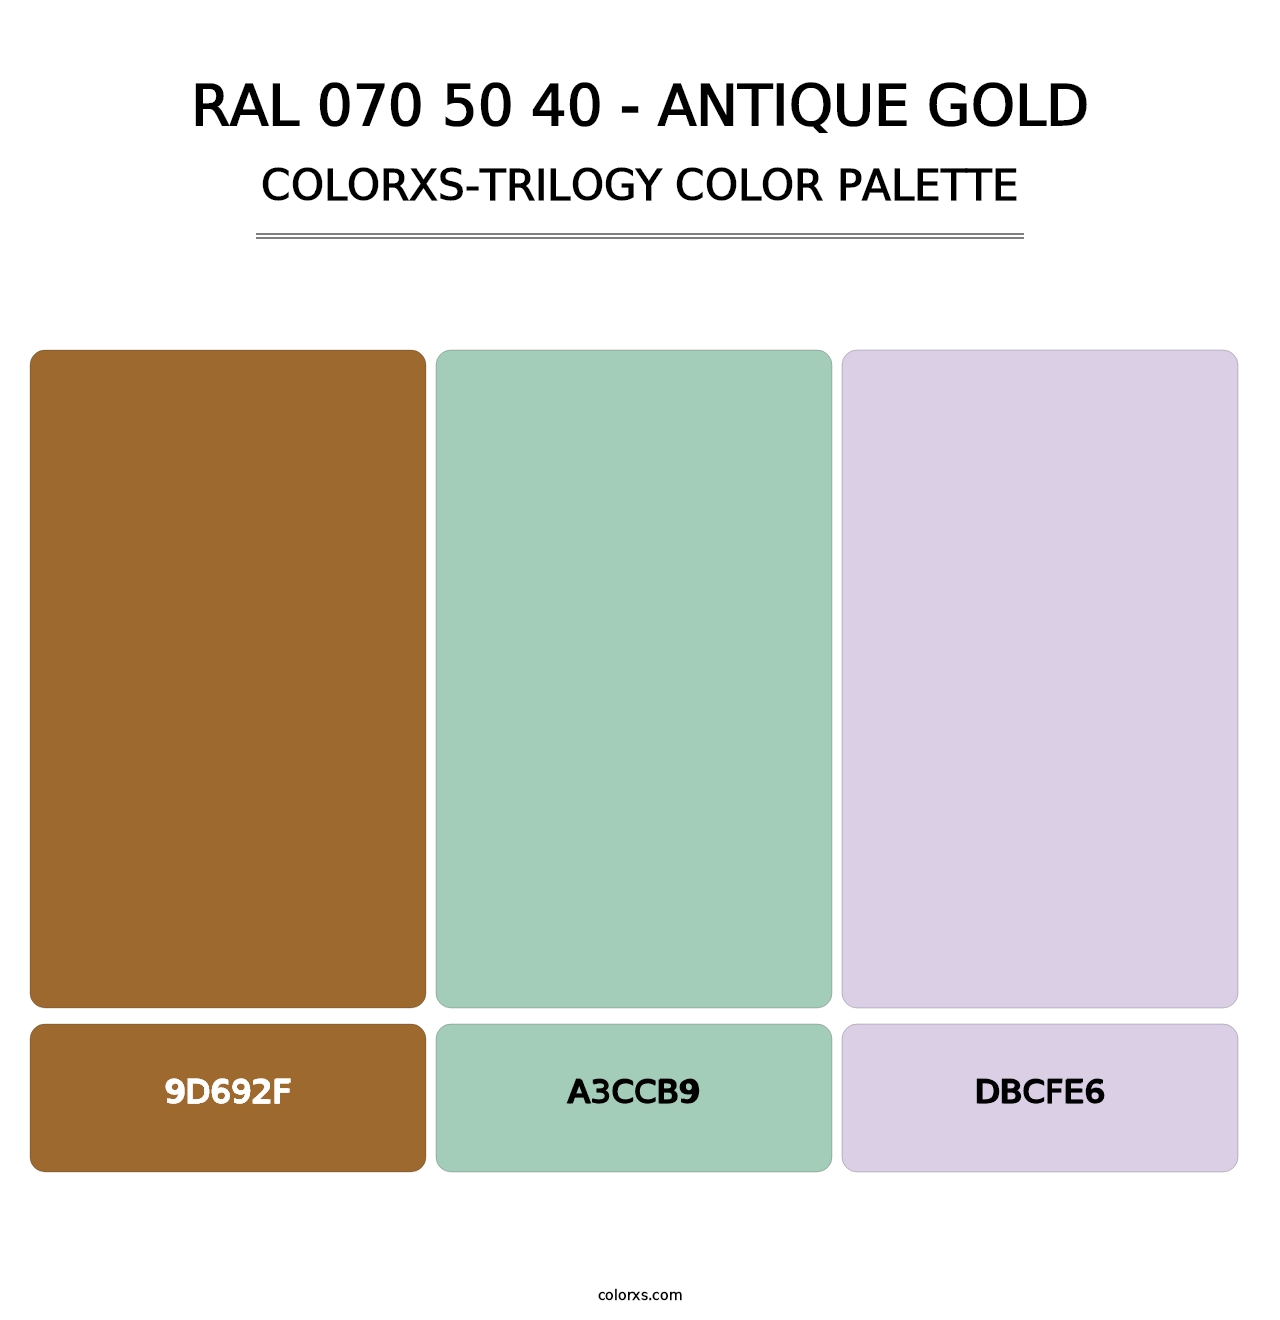 RAL 070 50 40 - Antique Gold - Colorxs Trilogy Palette